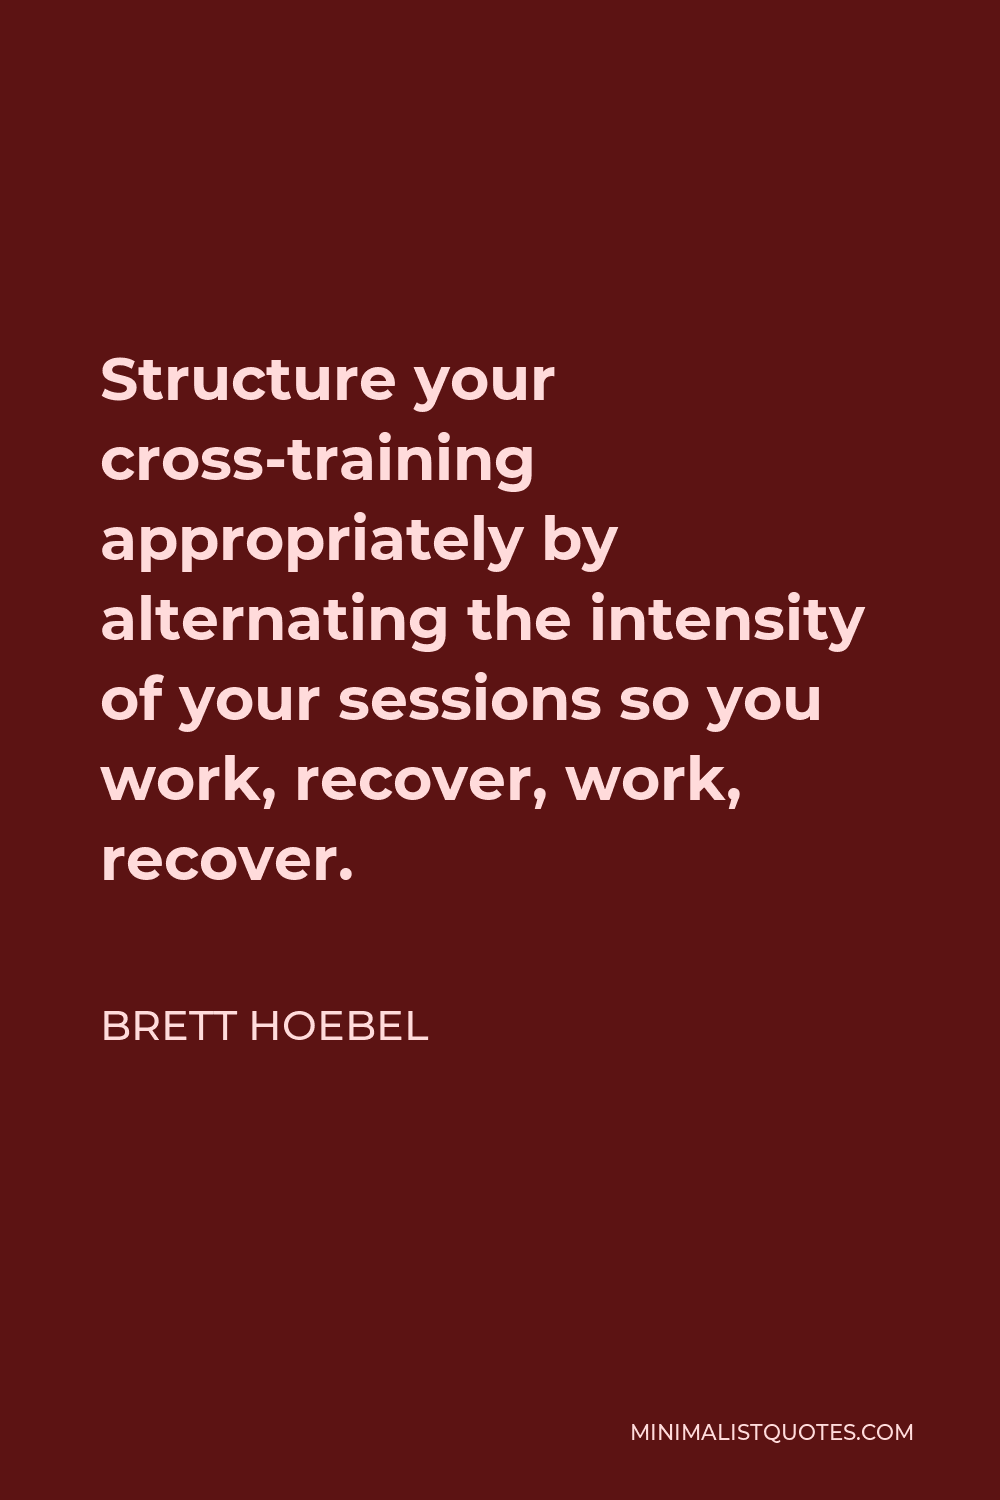 Brett Hoebel quote: It's the cross-training that's key. It doesn't